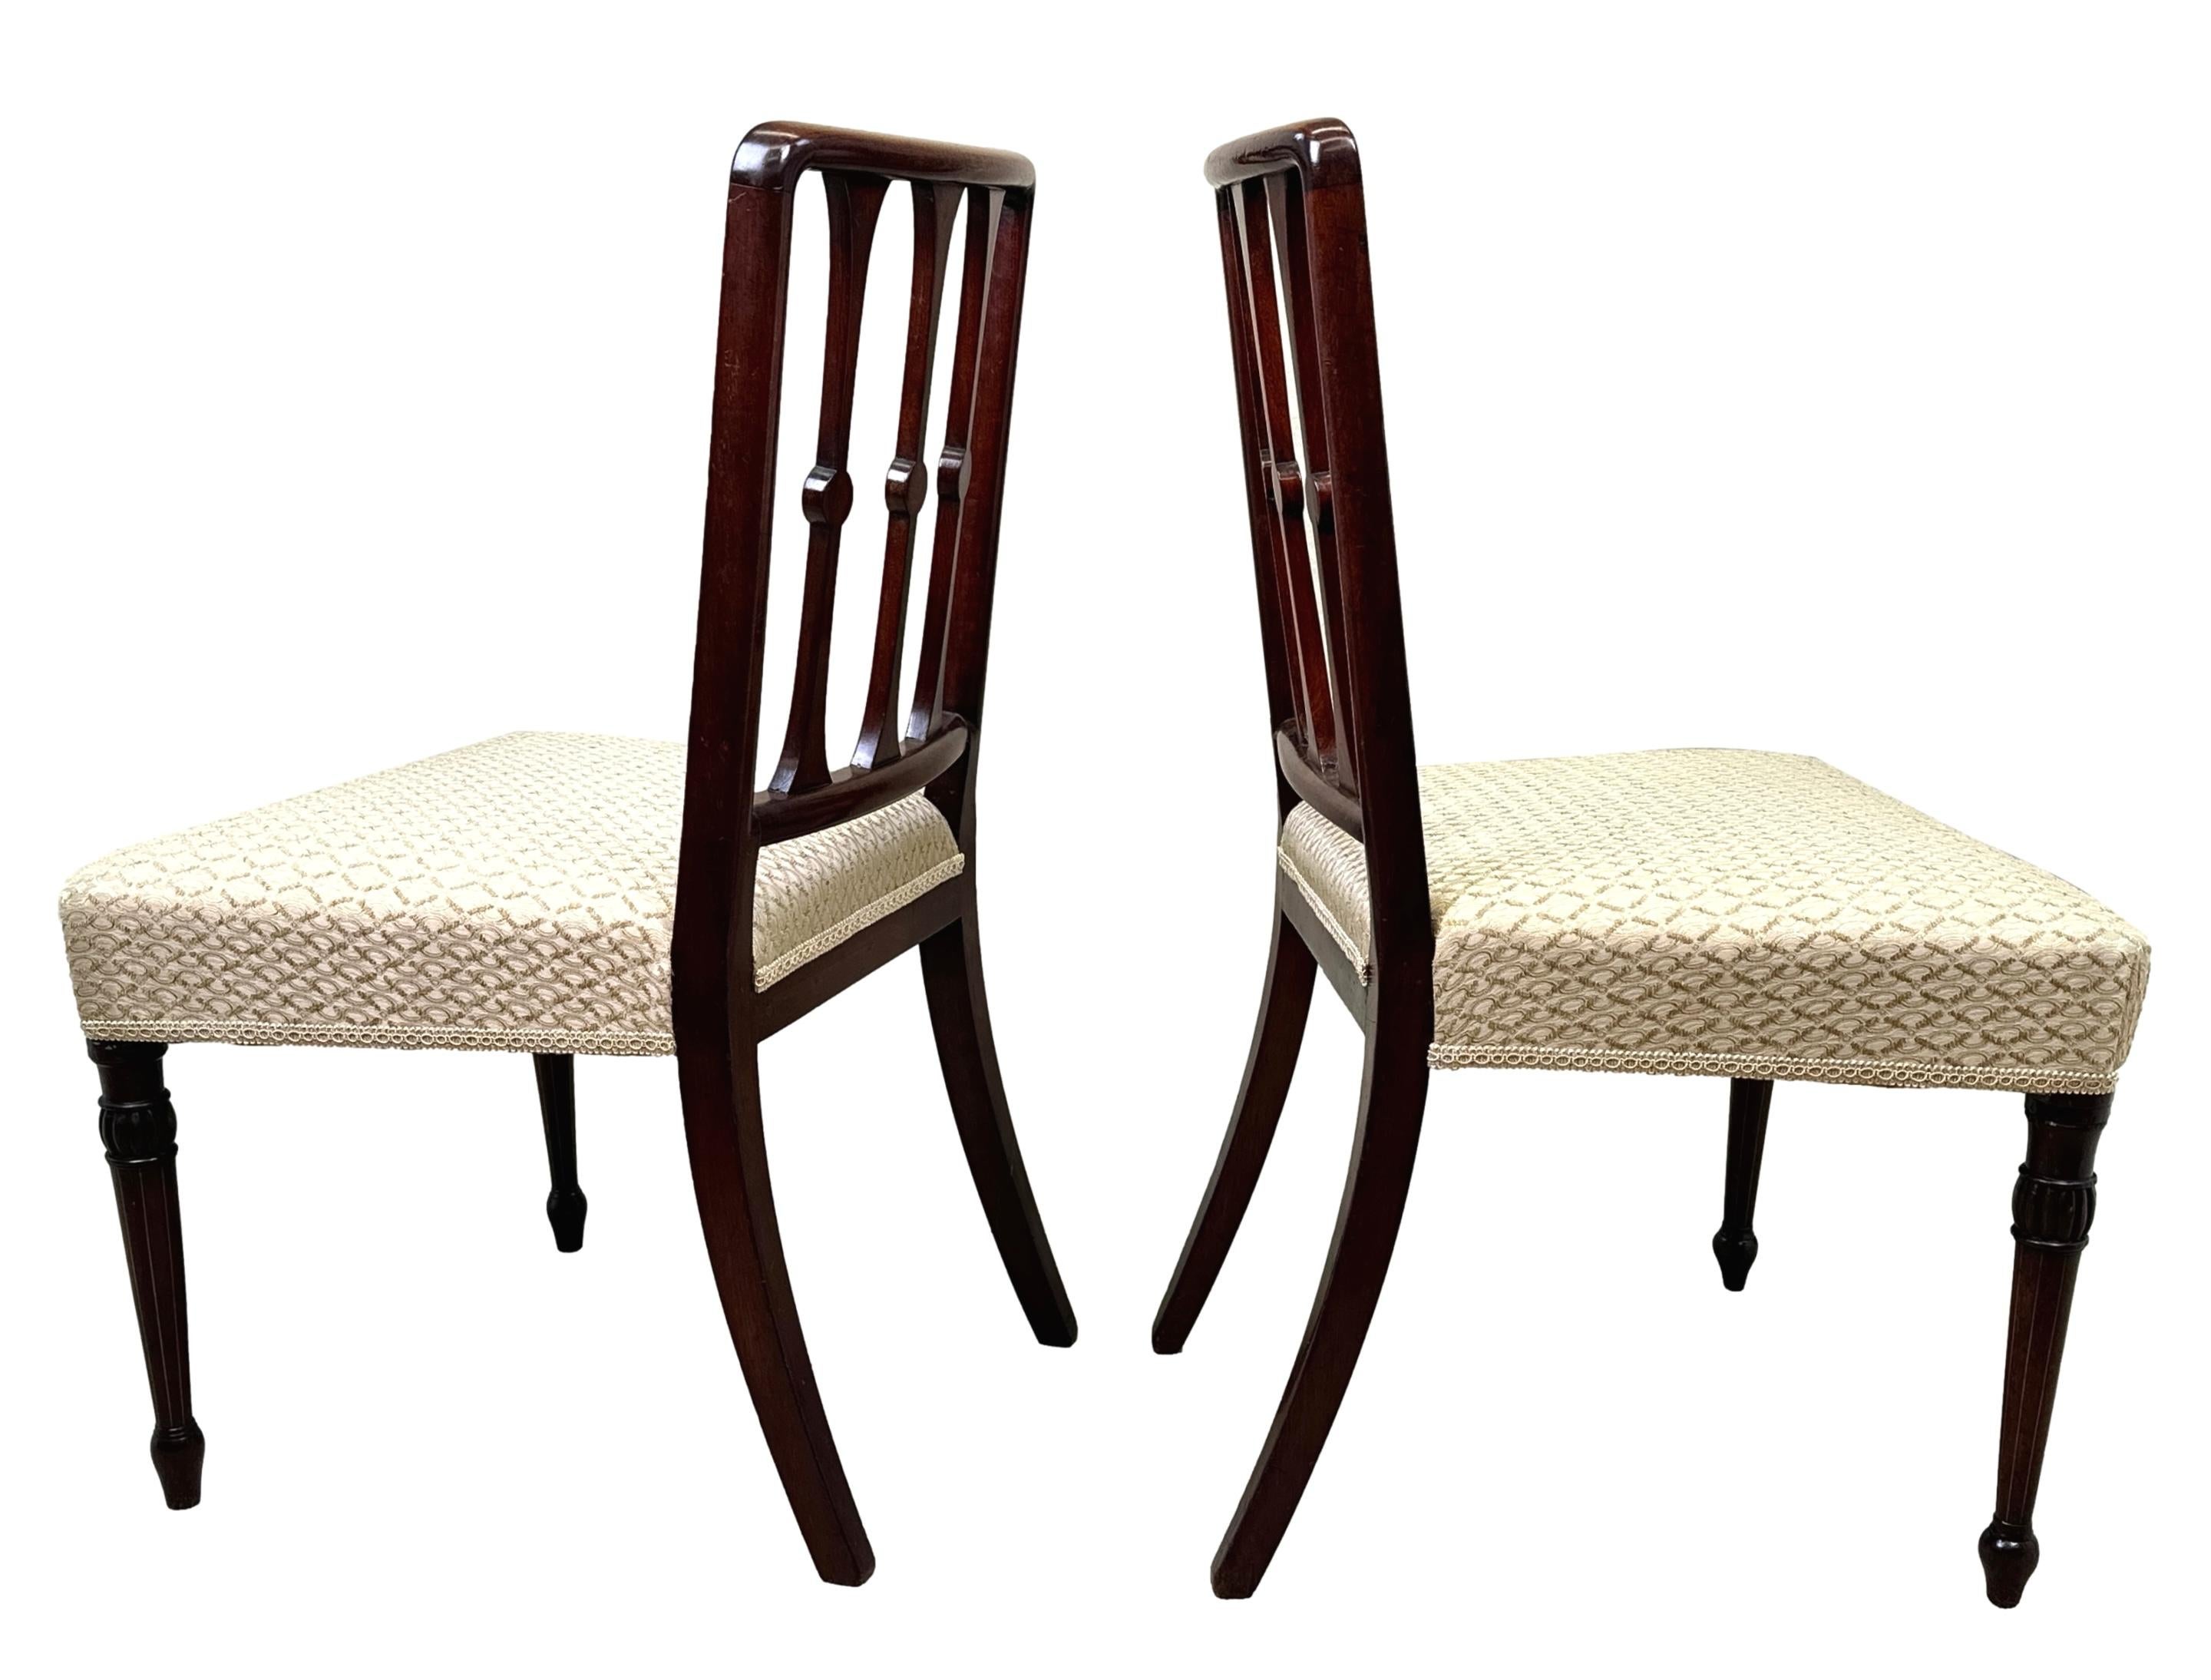 Superbe paire de chaises d'appoint en acajou de la fin du XVIIIe siècle, d'�époque géorgienne et Sheraton, avec des dossiers en échelle verticale extrêmement inhabituels et très attrayants, ornés d'une fine décoration sculptée et incrustée, sur des